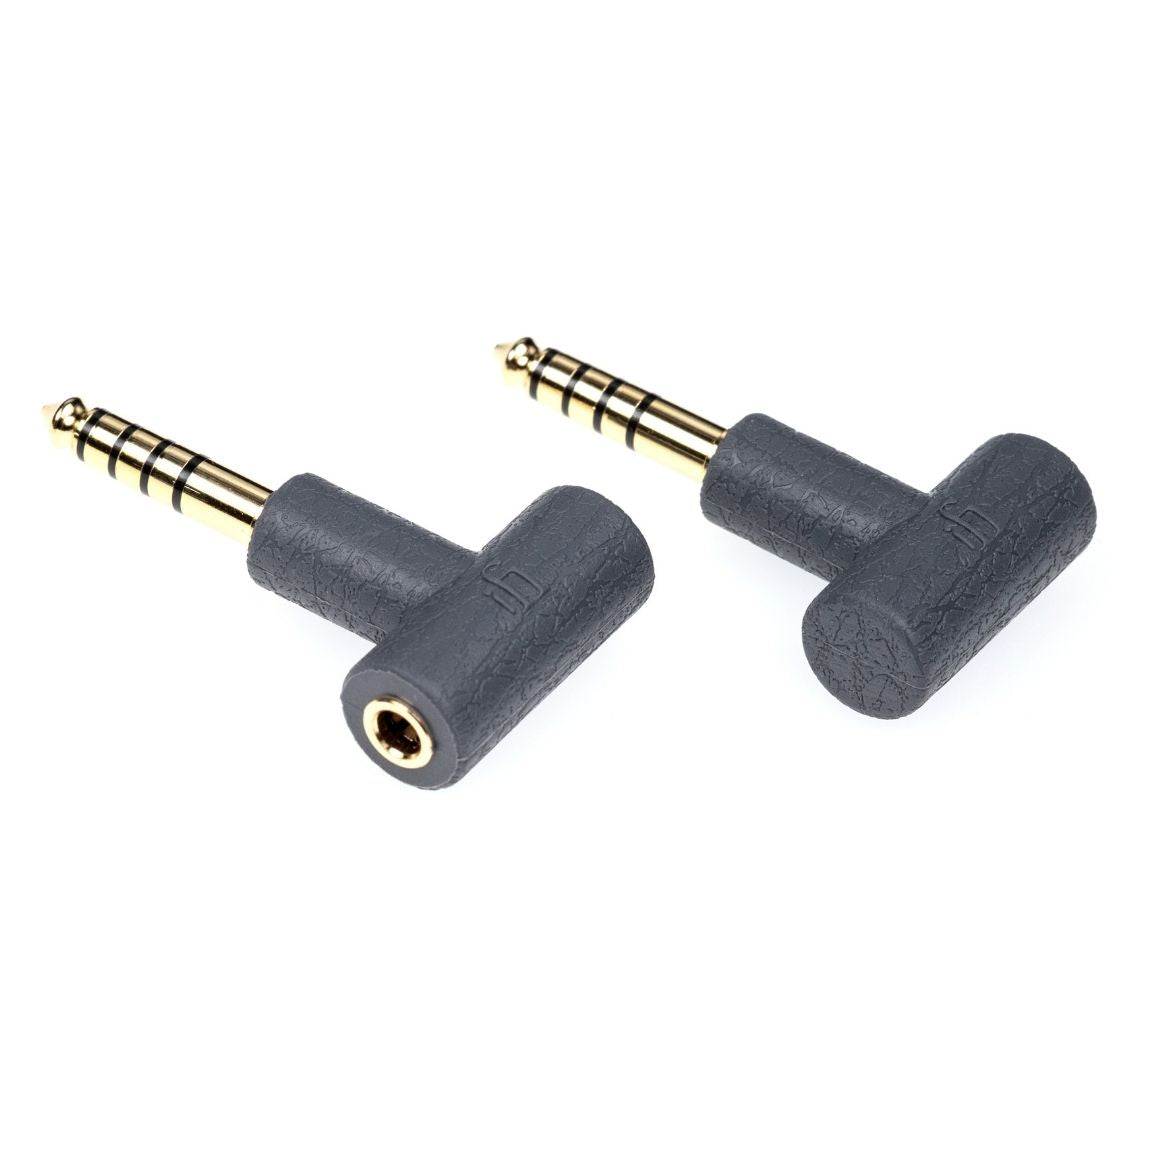 Headphone-Zone-iFi-Audio-3.5mm-to-4.4mm-Headphone-Adapter